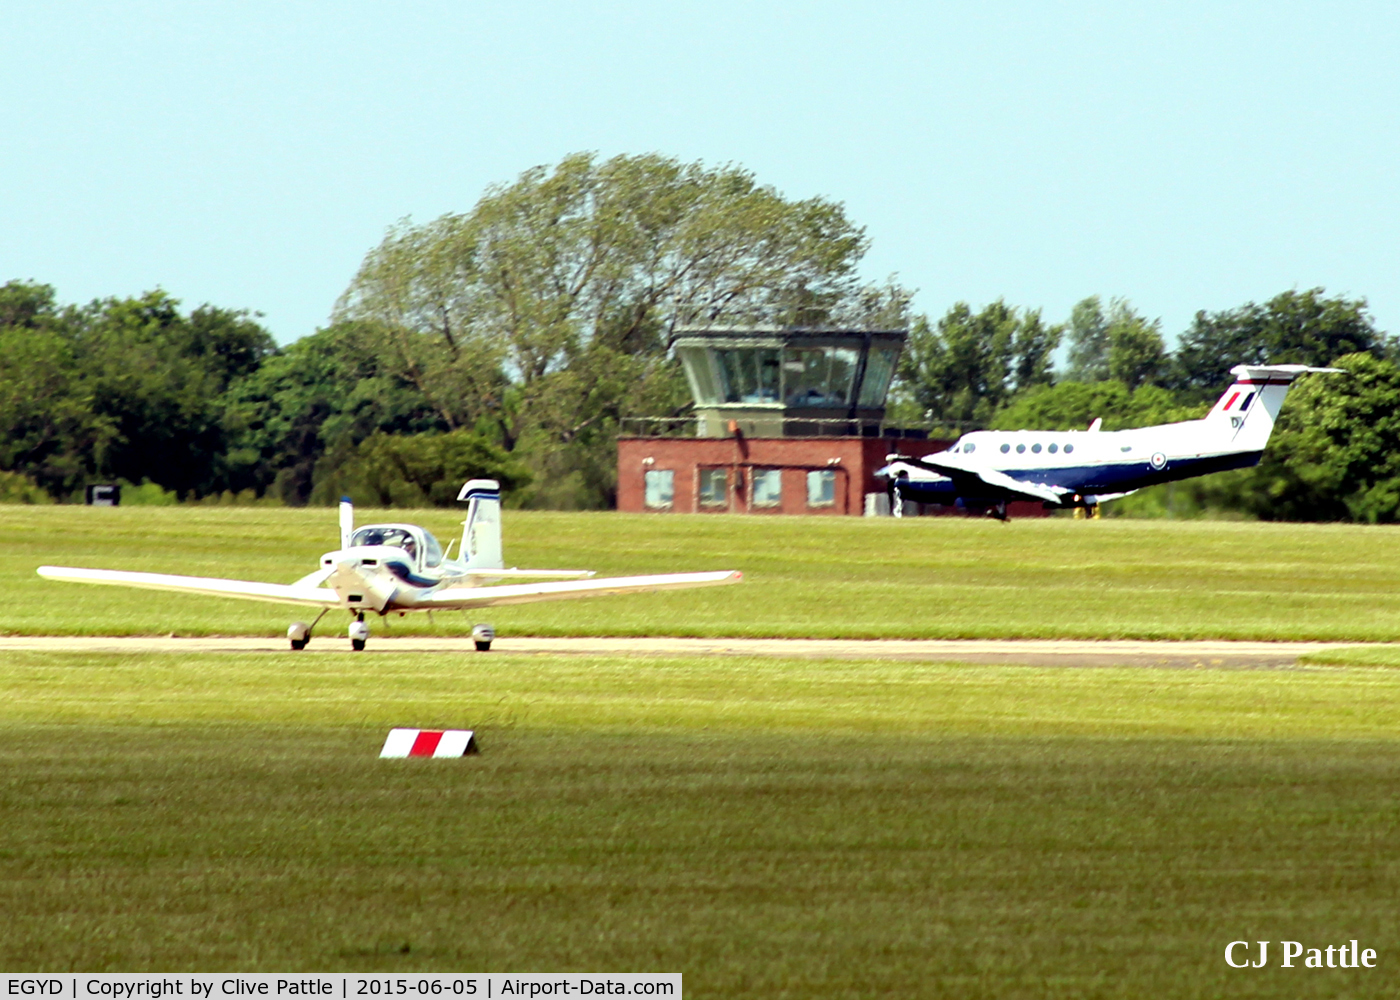 RAF Cranwell Airport, Cranwell, England United Kingdom (EGYD) - RAF Cranwell EGYD action on a sunny day